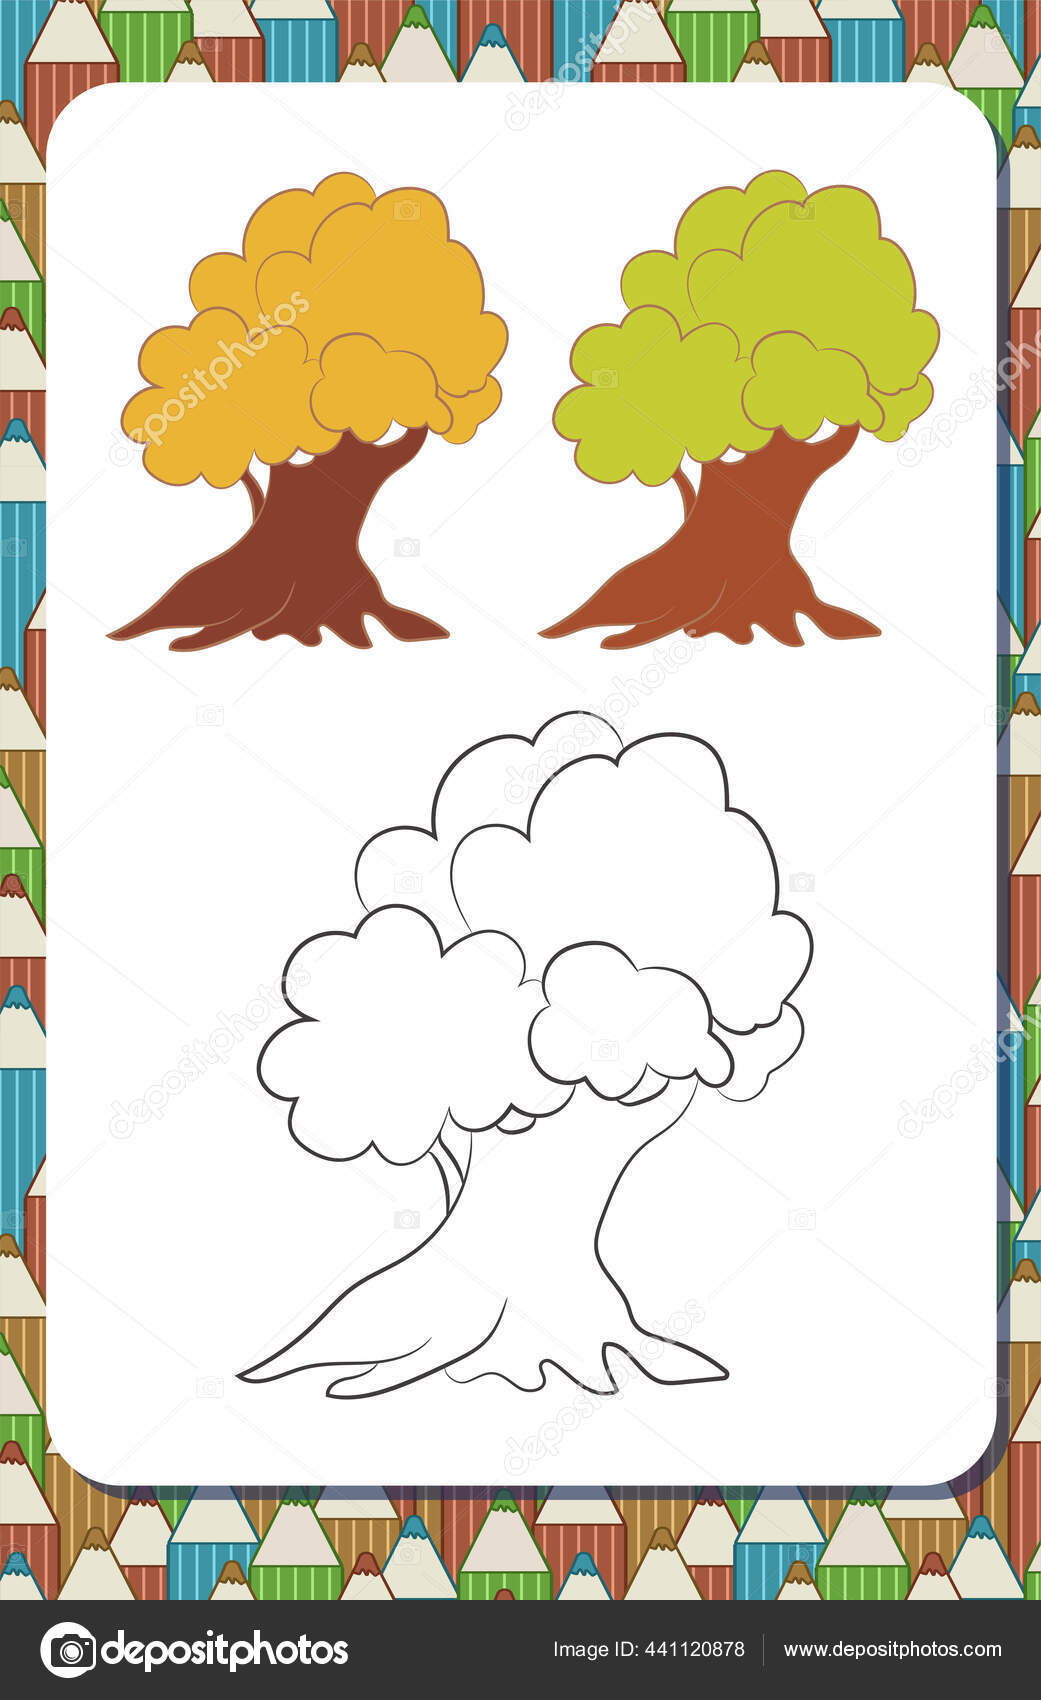 Halaman Buku Mewarnai Dengan Kontur Pohon Kartun Dan Contoh Berwarna Stok Vektor Zinako 441120878